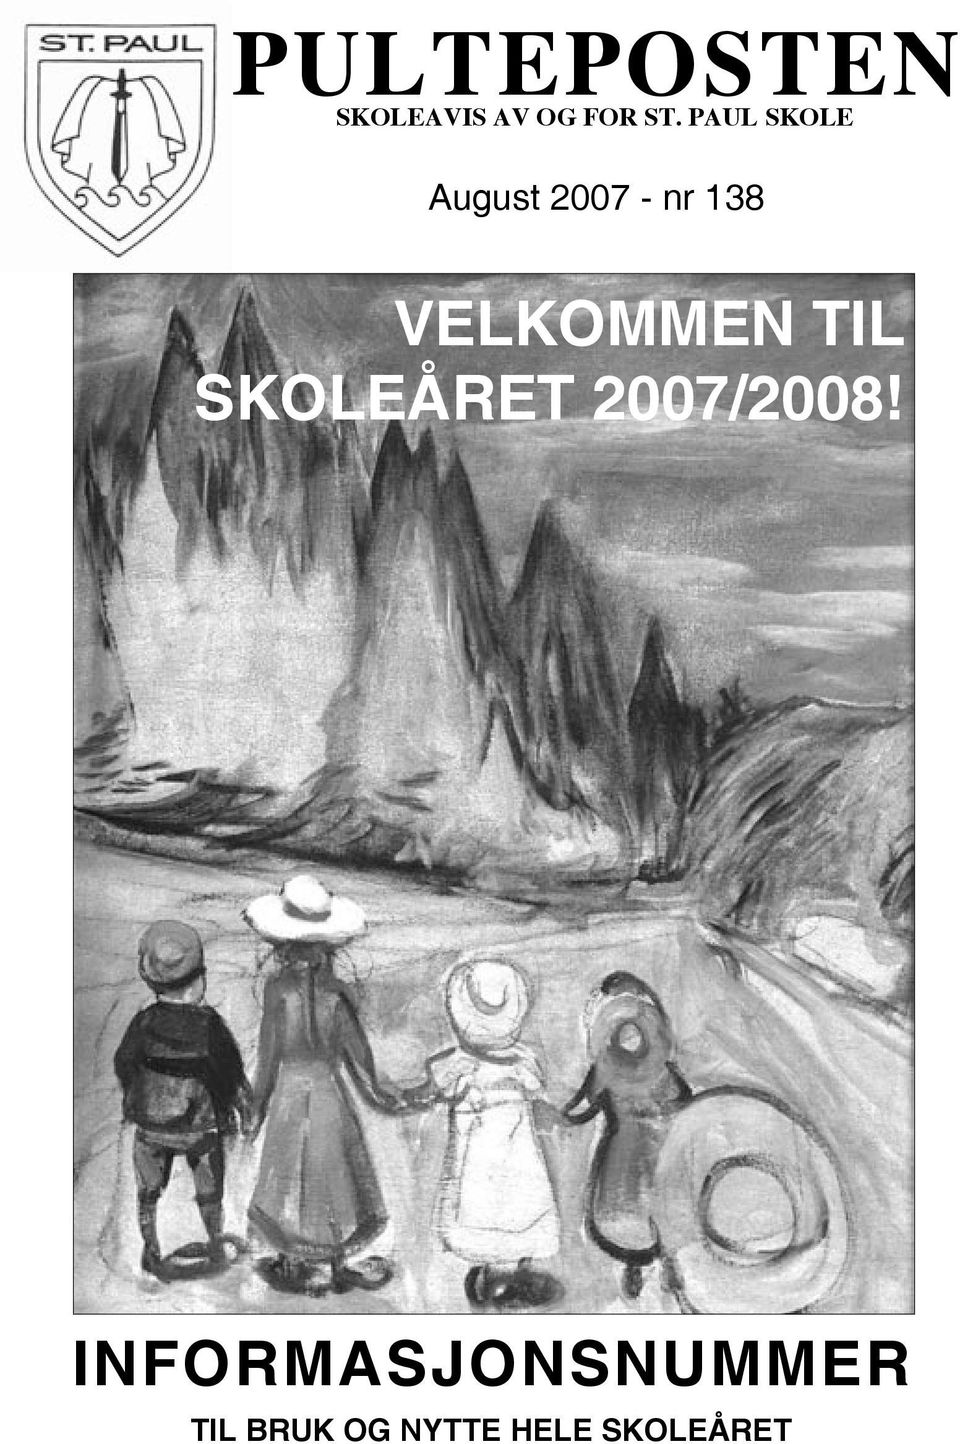 VELKOMMEN TIL SKOLEÅRET 2007/2008!